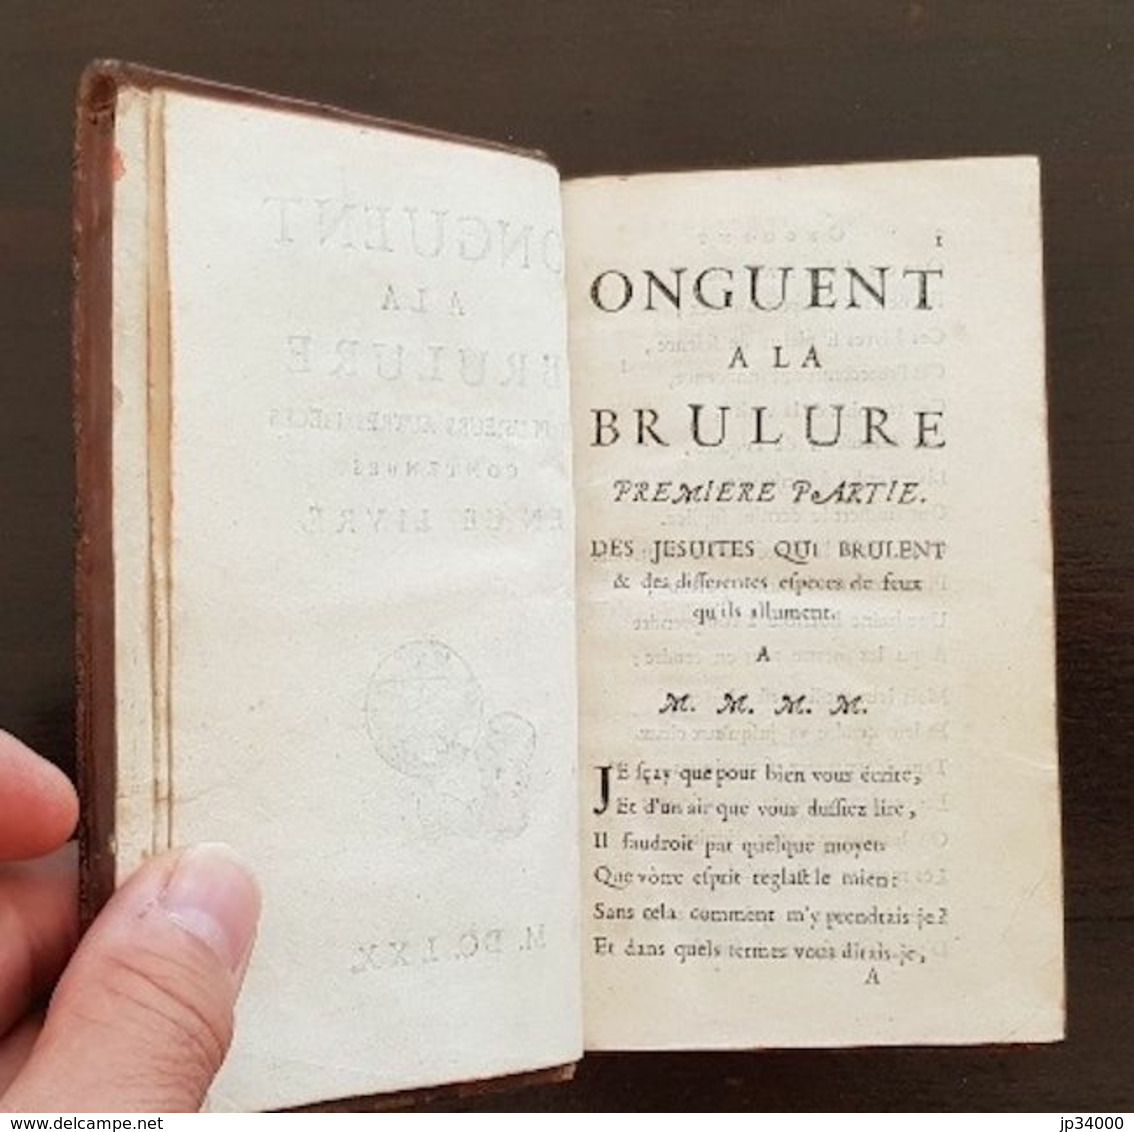 ONGUENT A LA BRULURE et plusieurs autres pieces, Par BARBIER d'AUCOUR en 1670